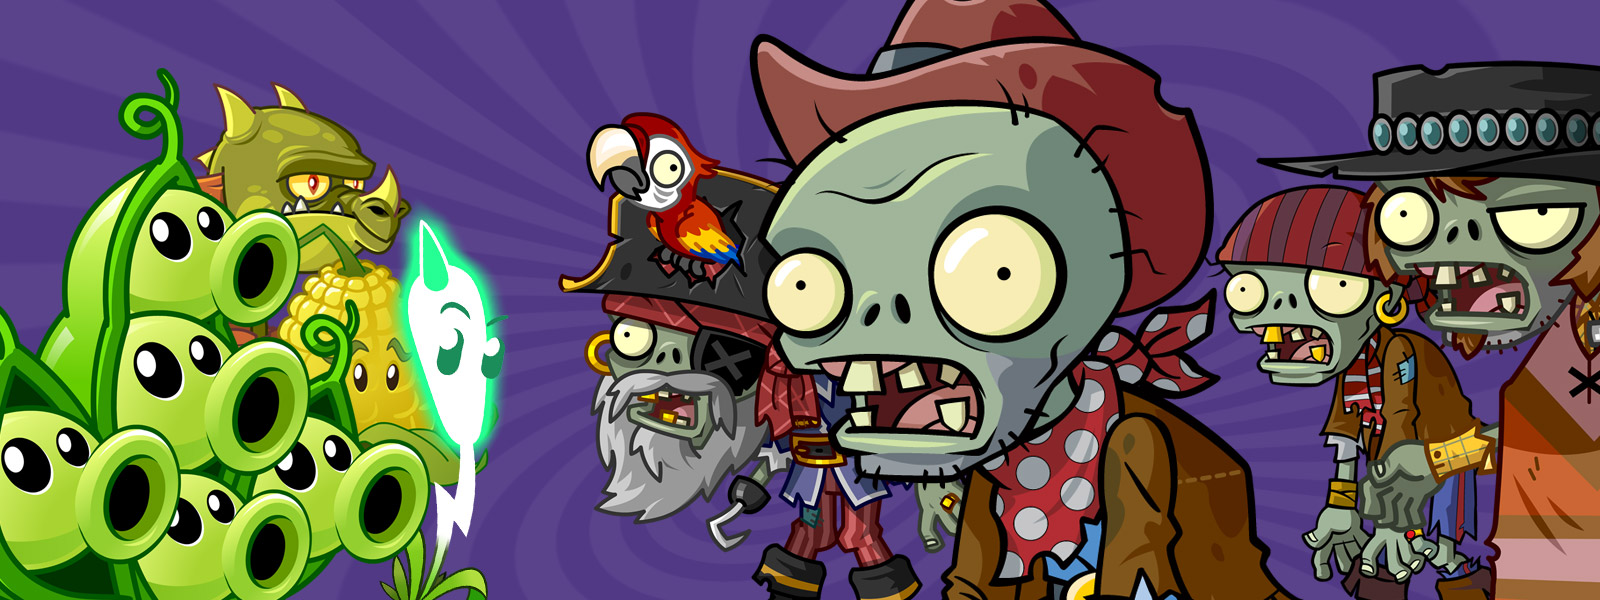 Hình ảnh vui nhộn về Plants vs Zombies